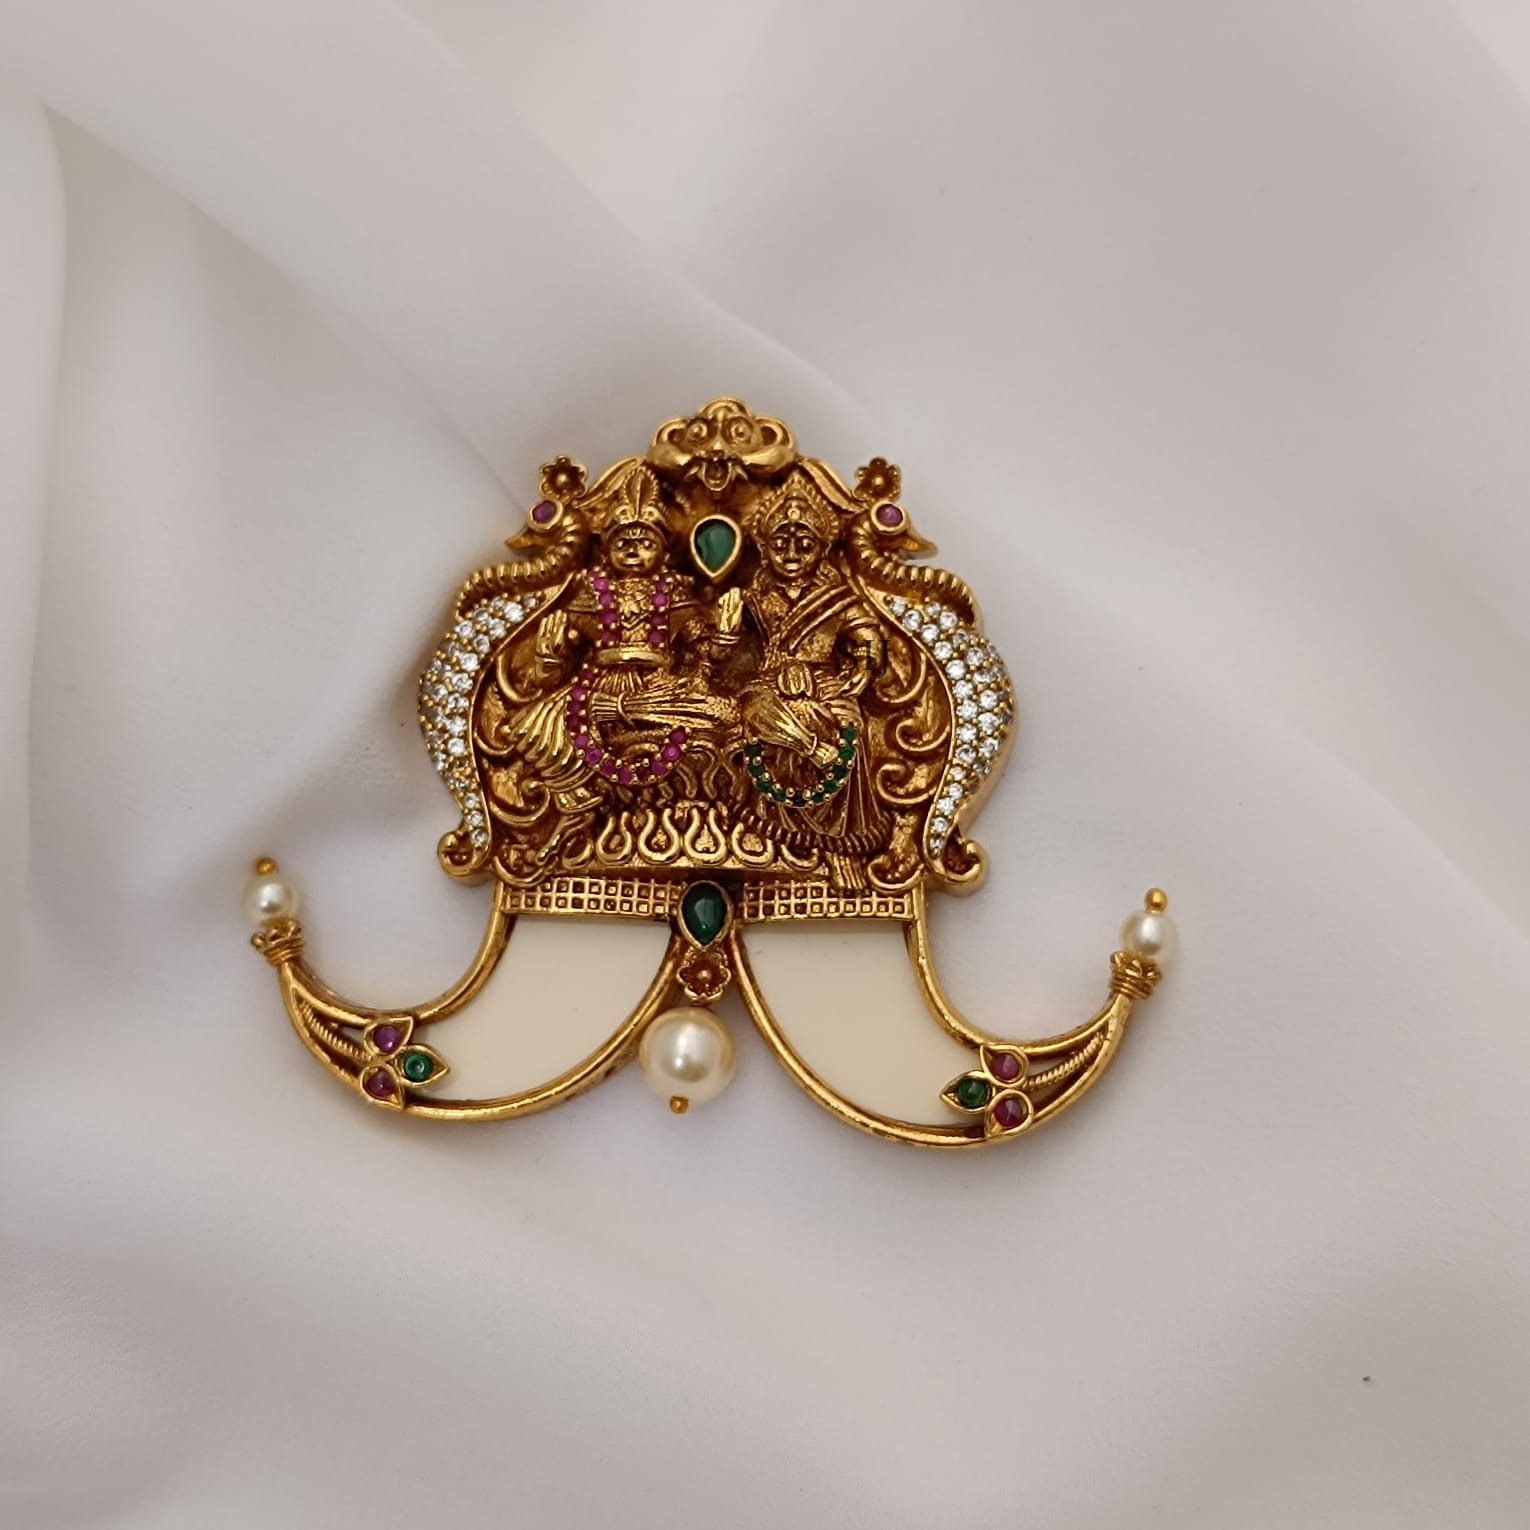 Beautiful Vishnu Lakshmi pendant